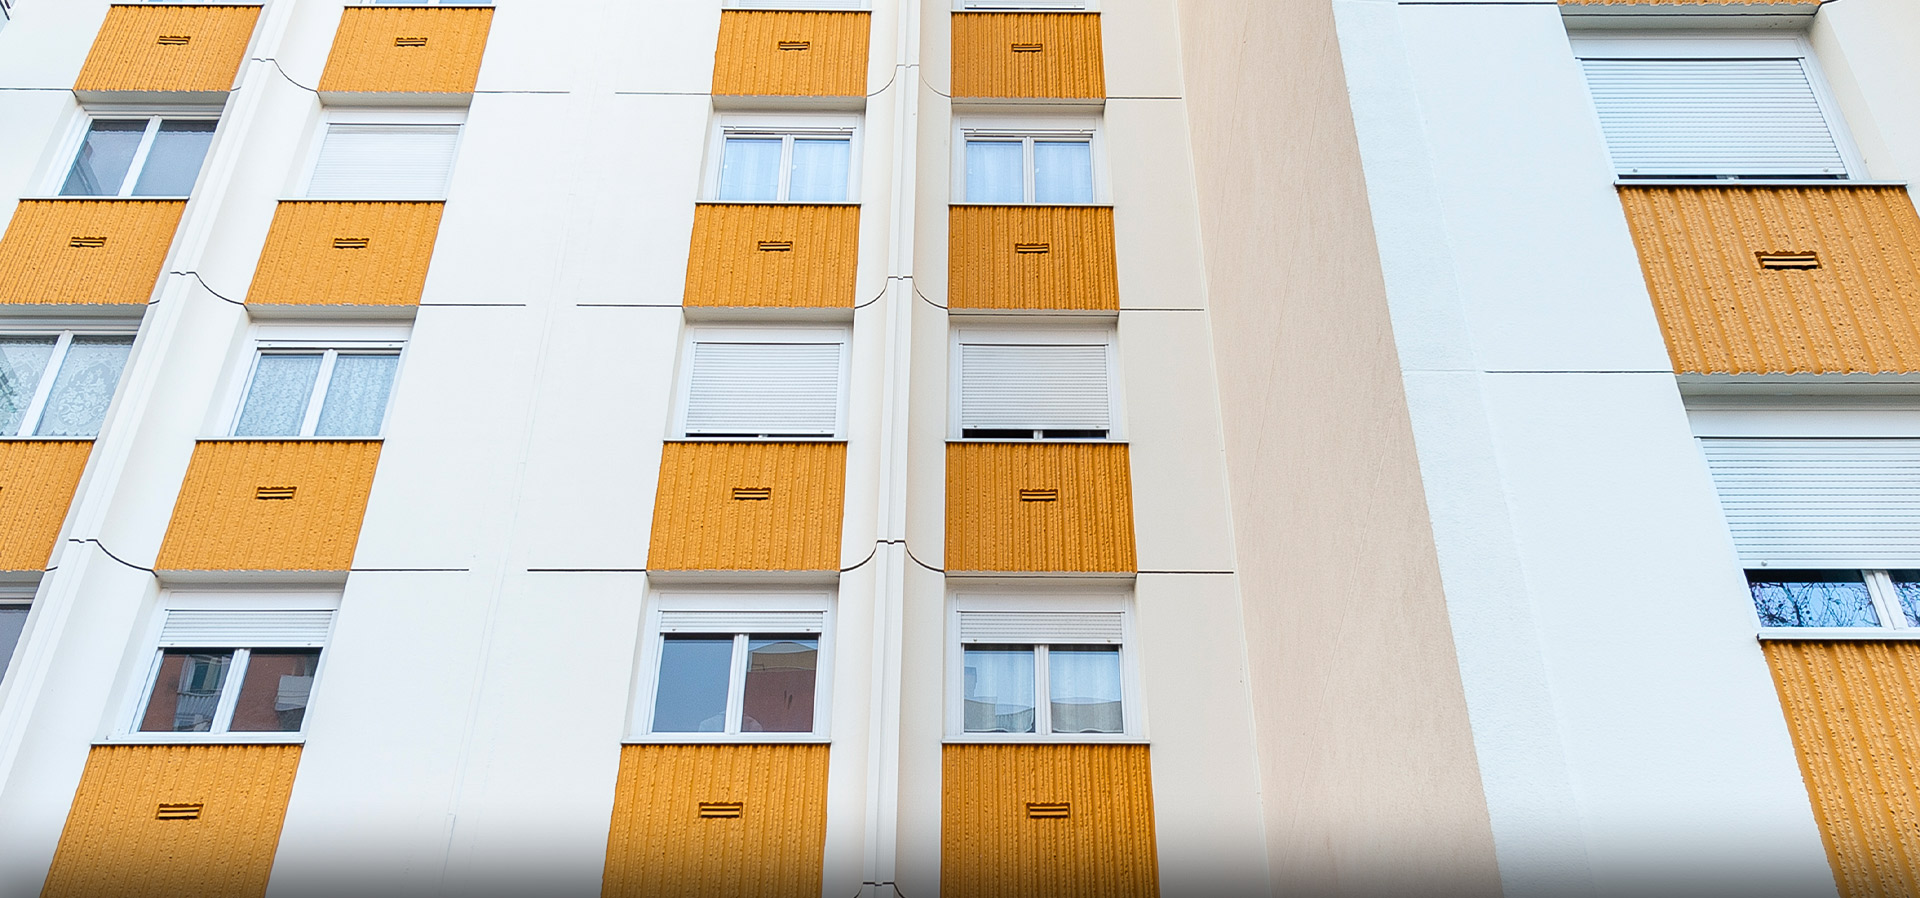 FRAQUELLI Montreuil | Entreprise du bâtiment pour la réalisation et rénovation de cage d'escalier, sols, hall d'immeuble et façades (isolation, pierre de taille, peinture, nettoyage)